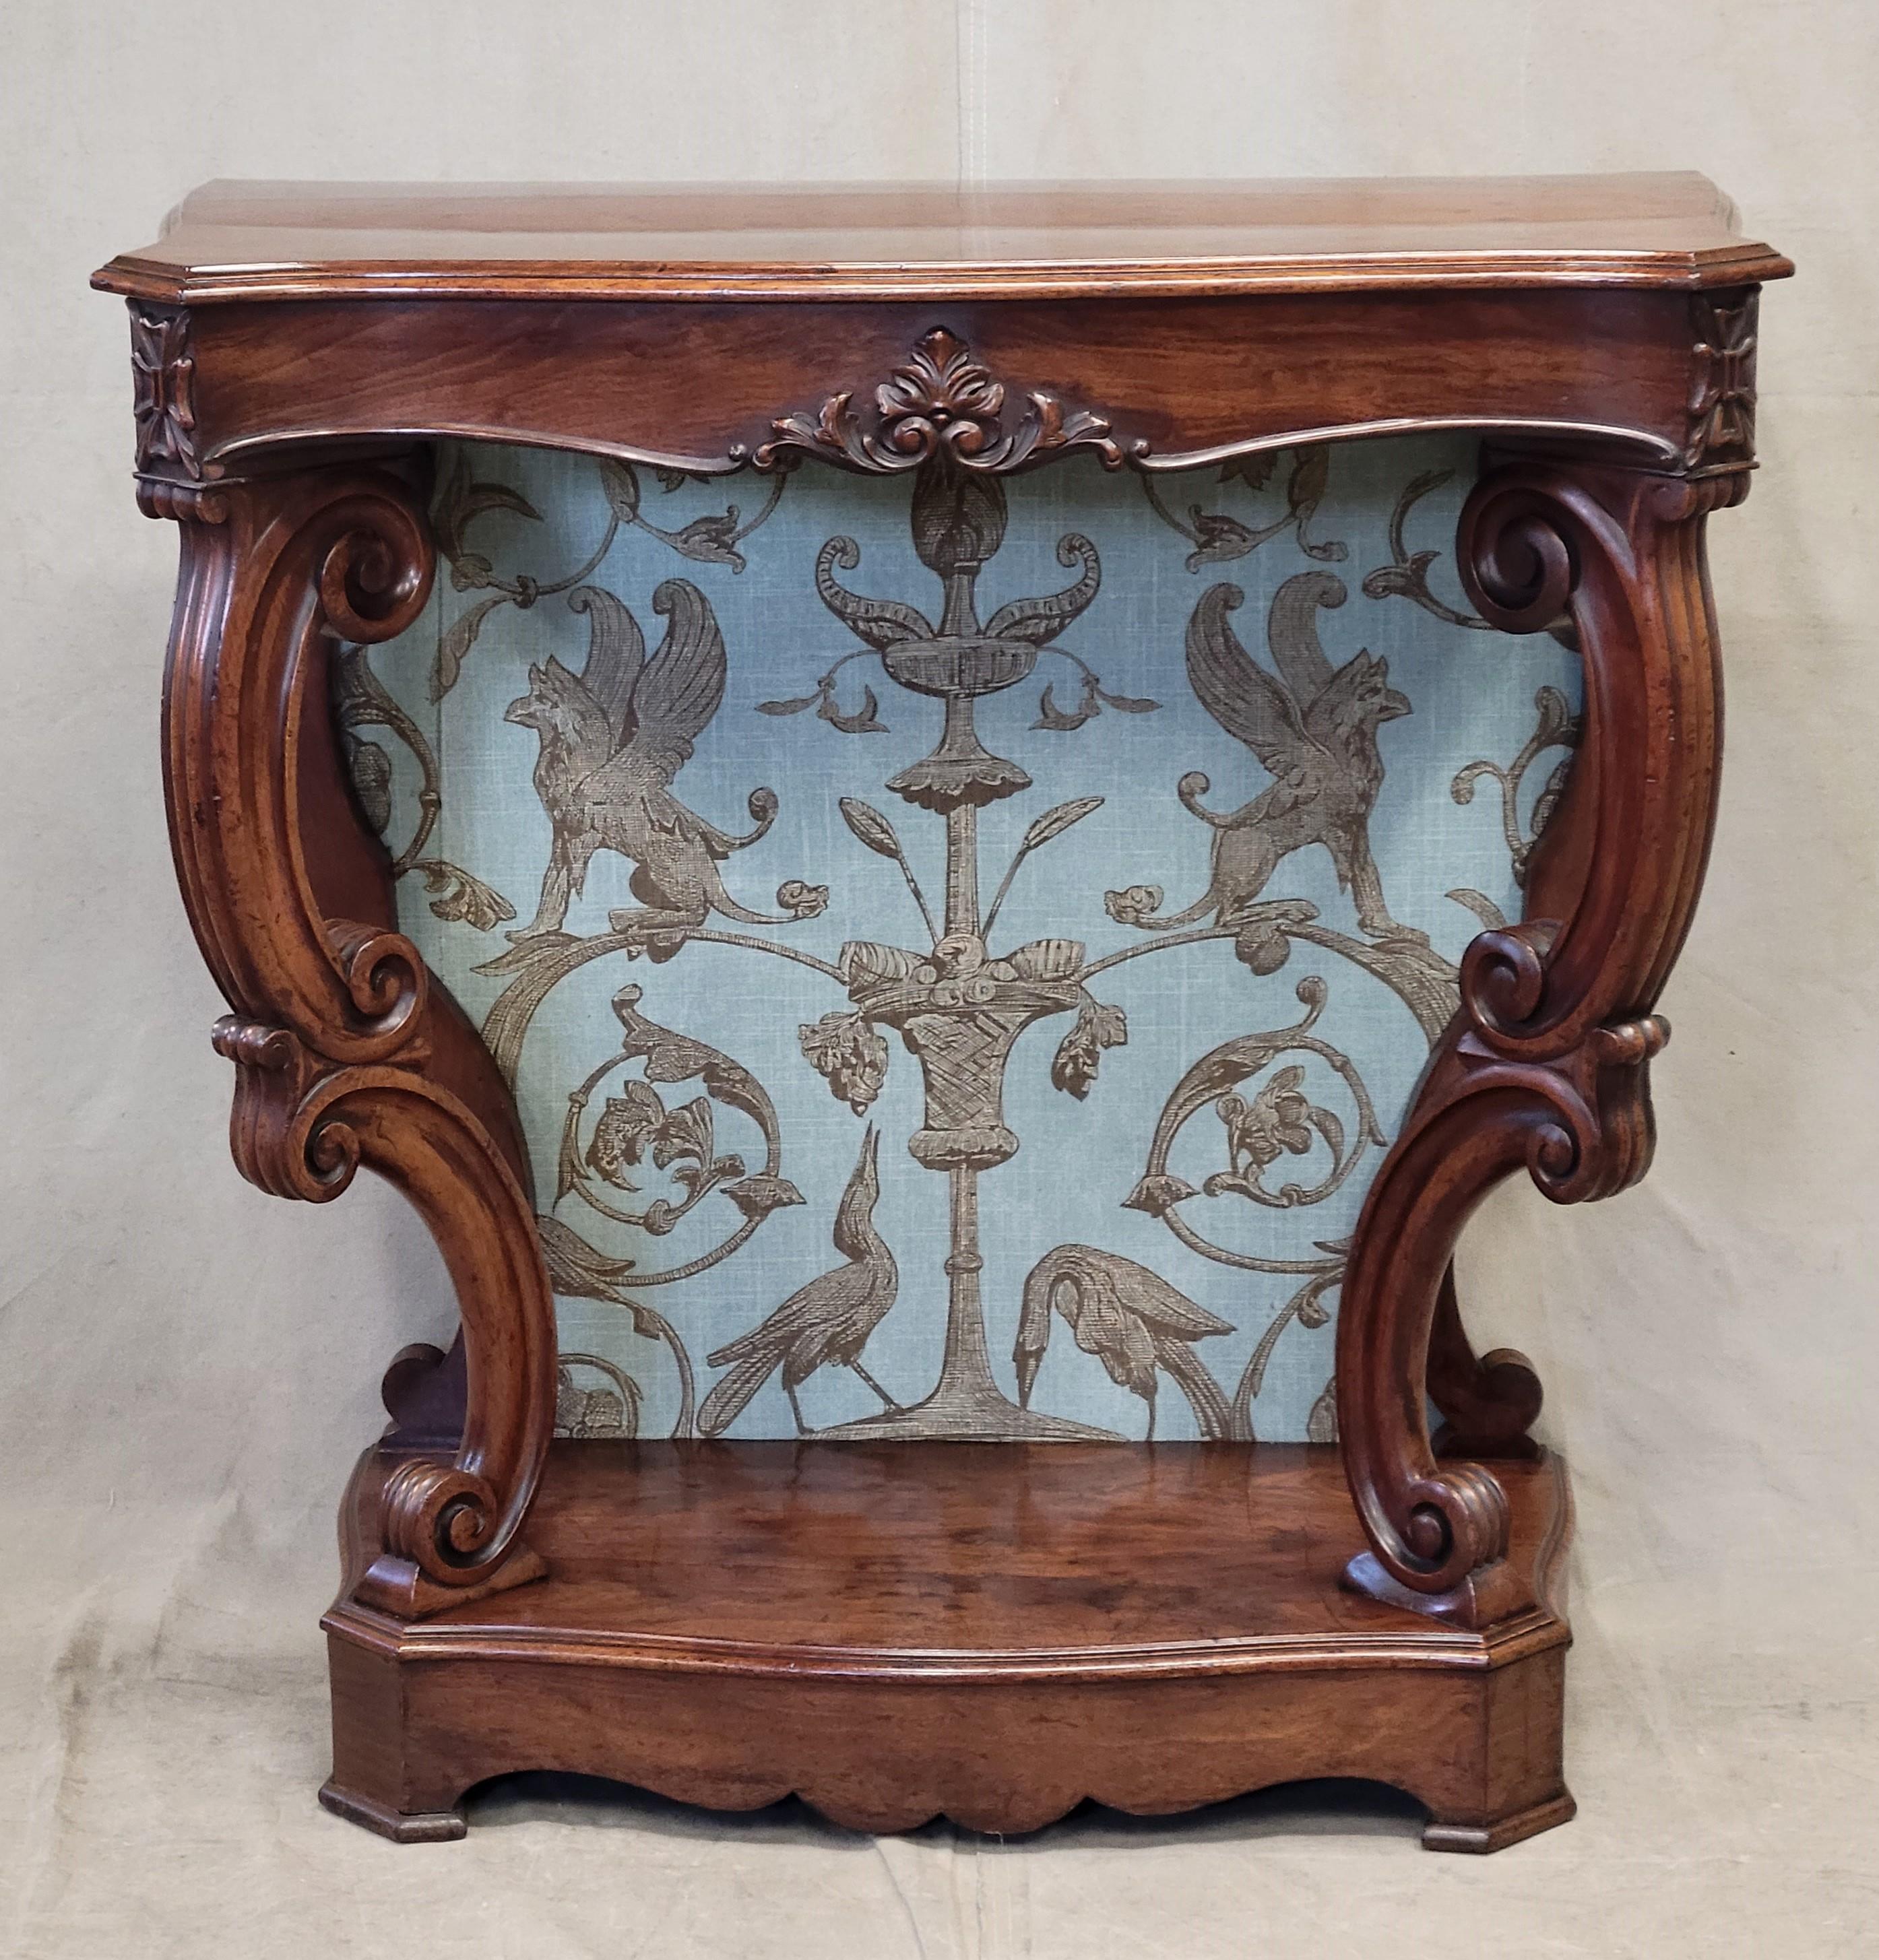 Antique Louis Phillipe Console Table with Thibaut Renaissance Fabric Panel 5